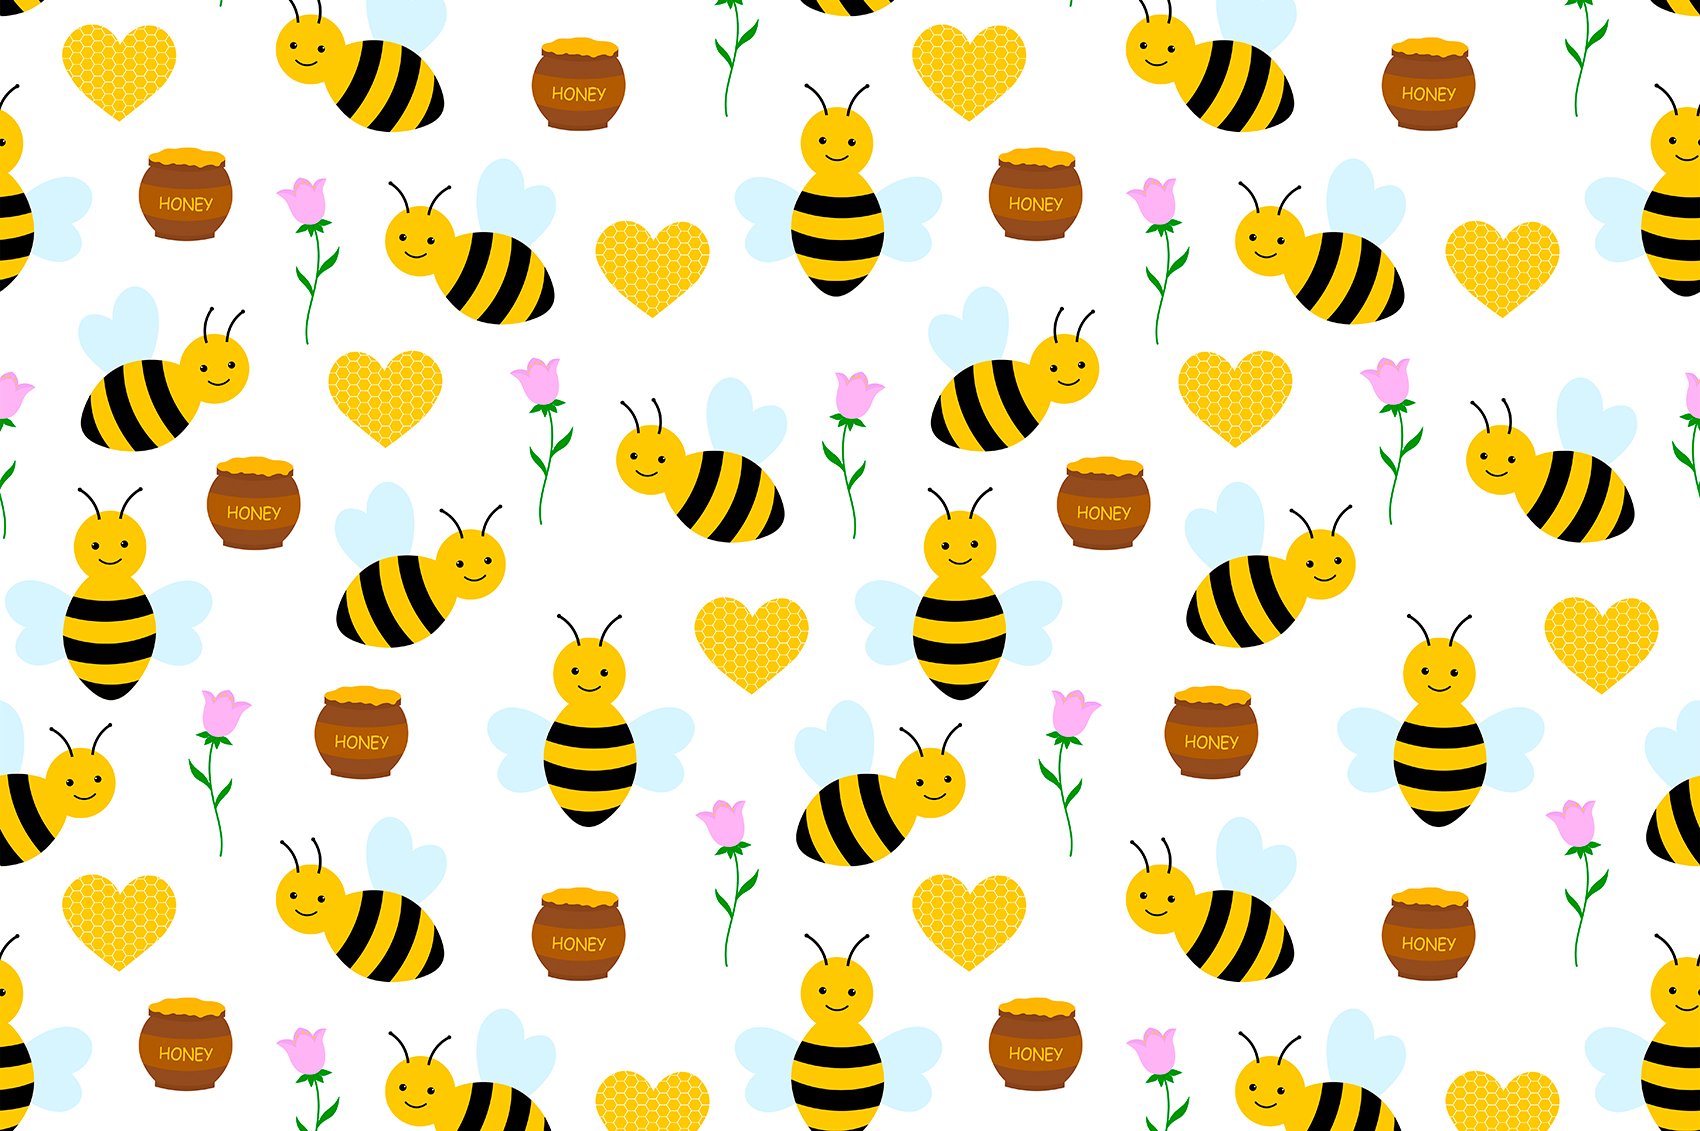 Happy bees.